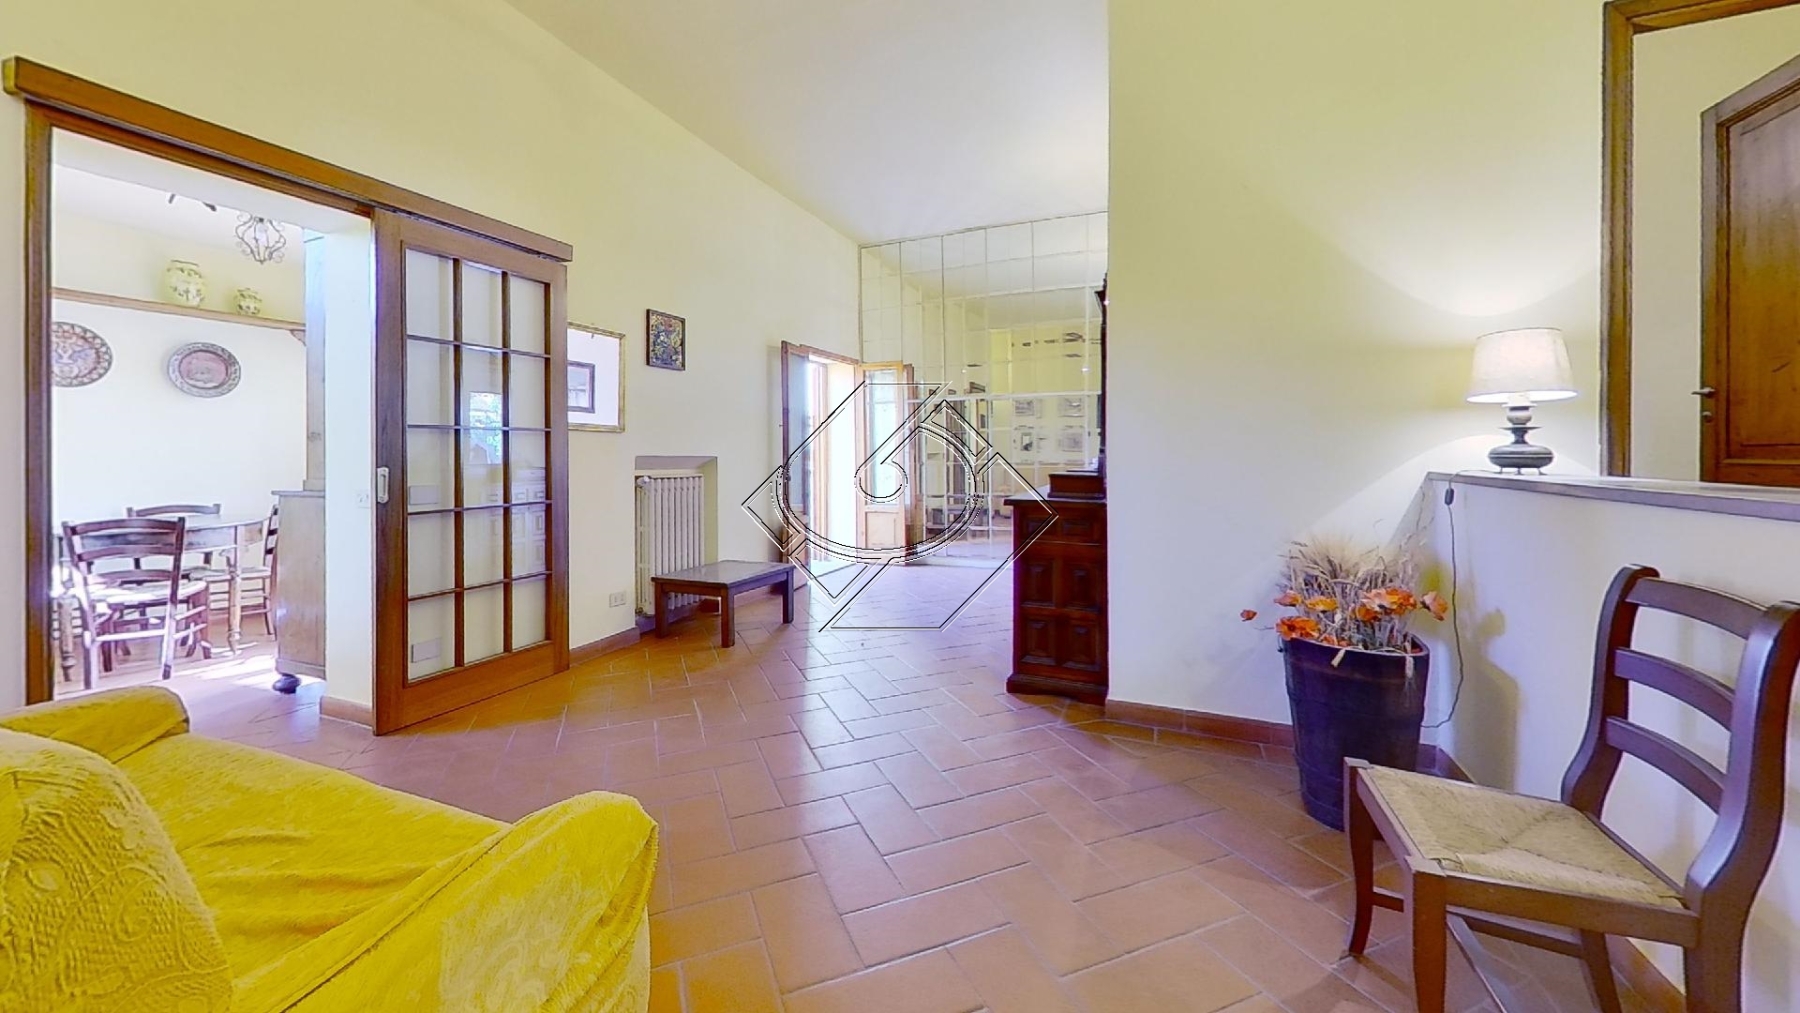 28A-Via-dei-Grecchi-Living-Room